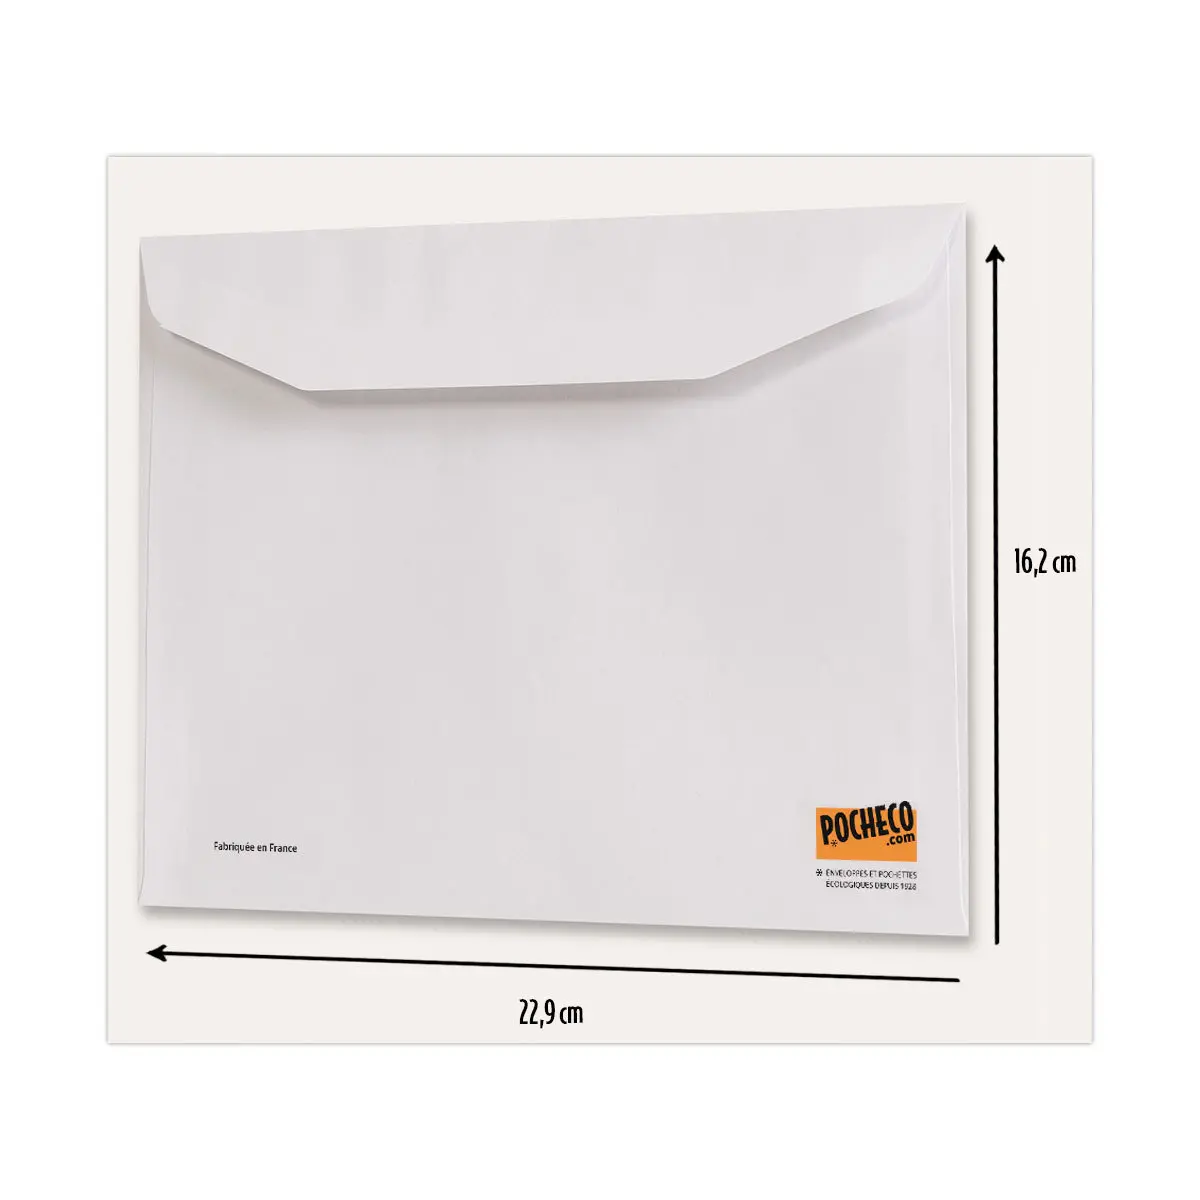 Carton de 1000 Enveloppes MSP blanches 80g 162x229mm sans fenêtre photo du produit